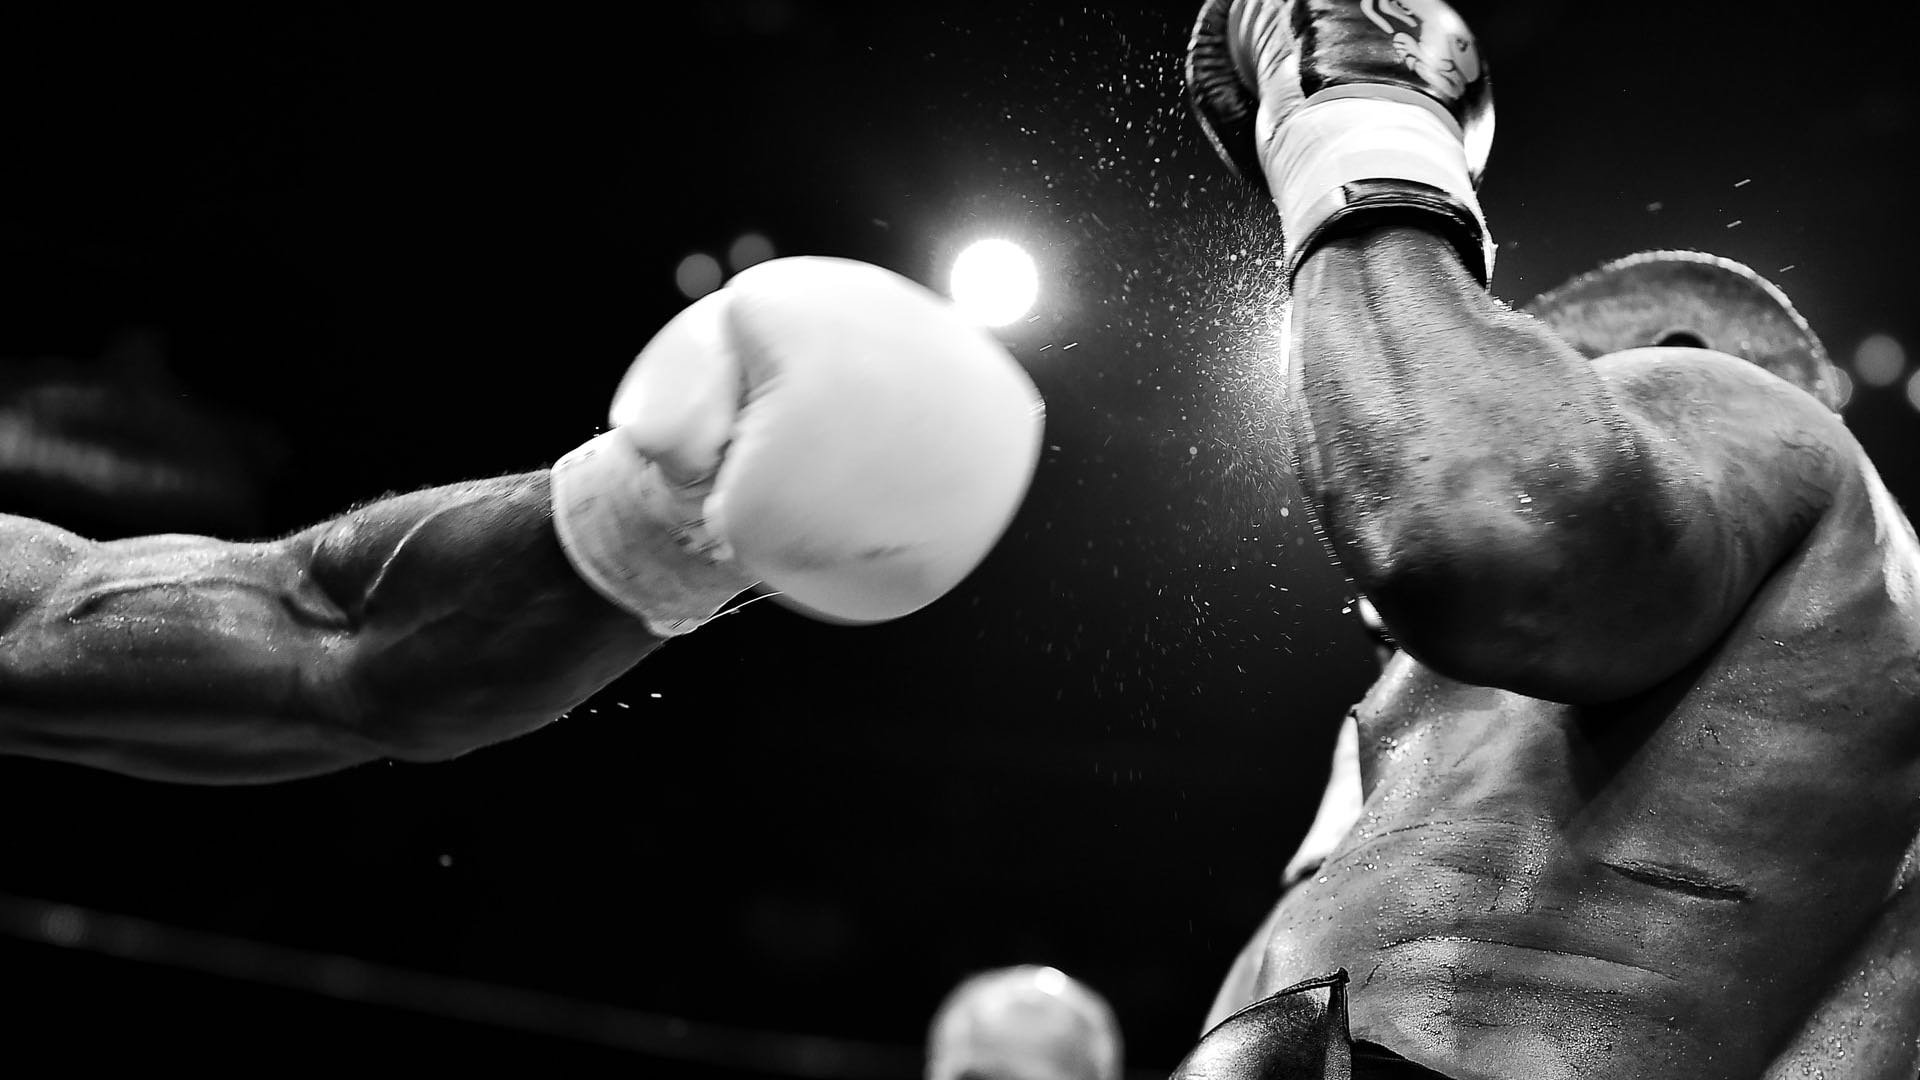 Zwei schwarze Boxer im Ring, der linke holt zum Schlag aus.